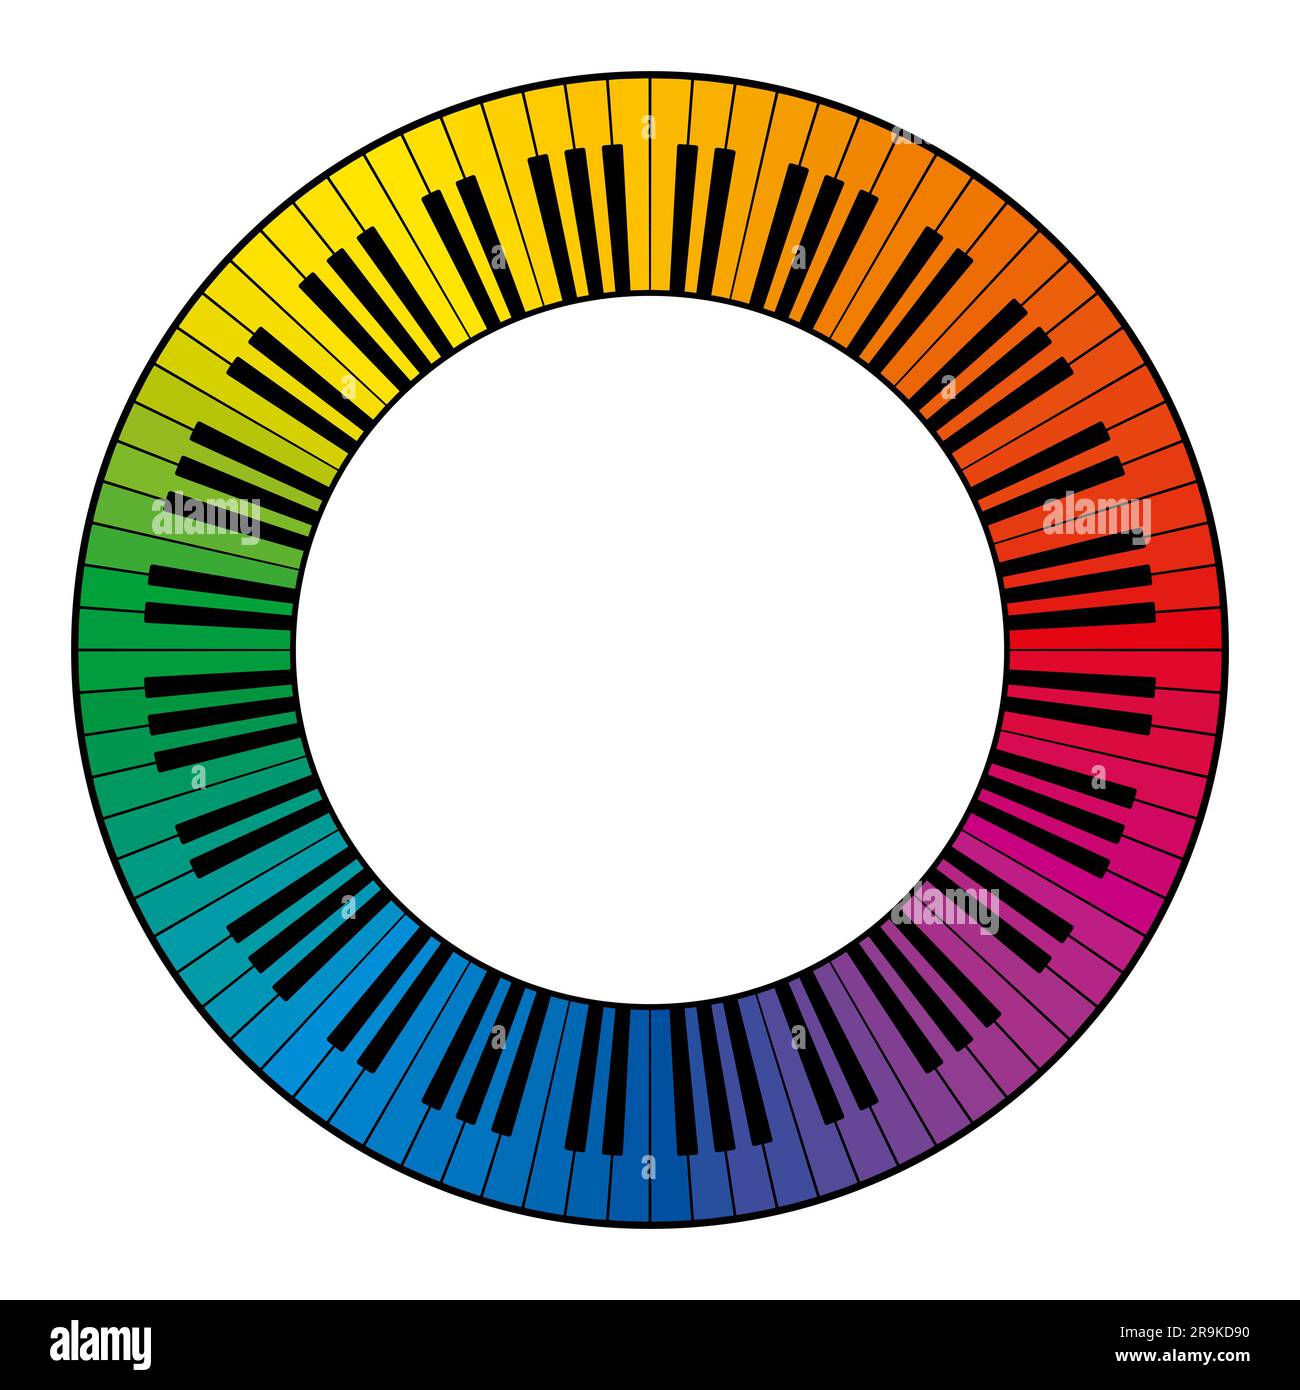 Clavier musical, cadre circulaire, avec douze octaves de touches de couleur arc-en-ciel. Bordure décorative, construite à partir de touches multicolores d'un clavier de piano Banque D'Images